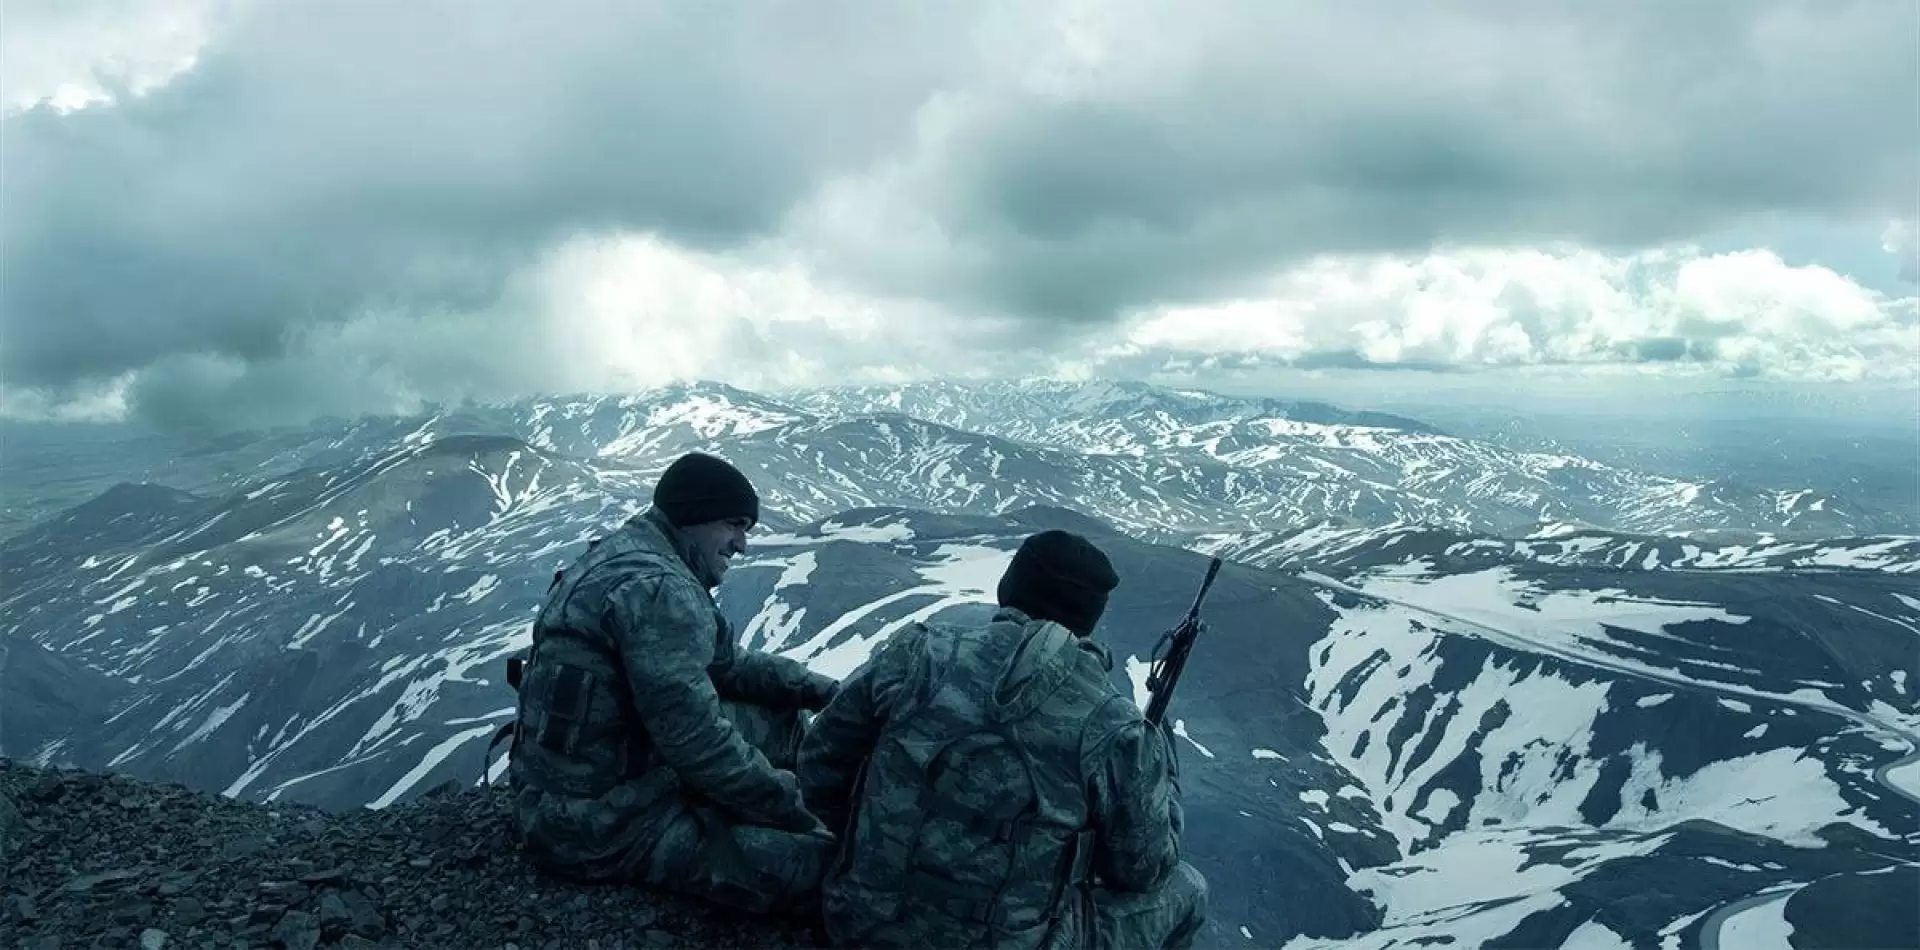 دانلود فیلم The Mountain 2012 (کوه ۱) با تماشای آنلاین